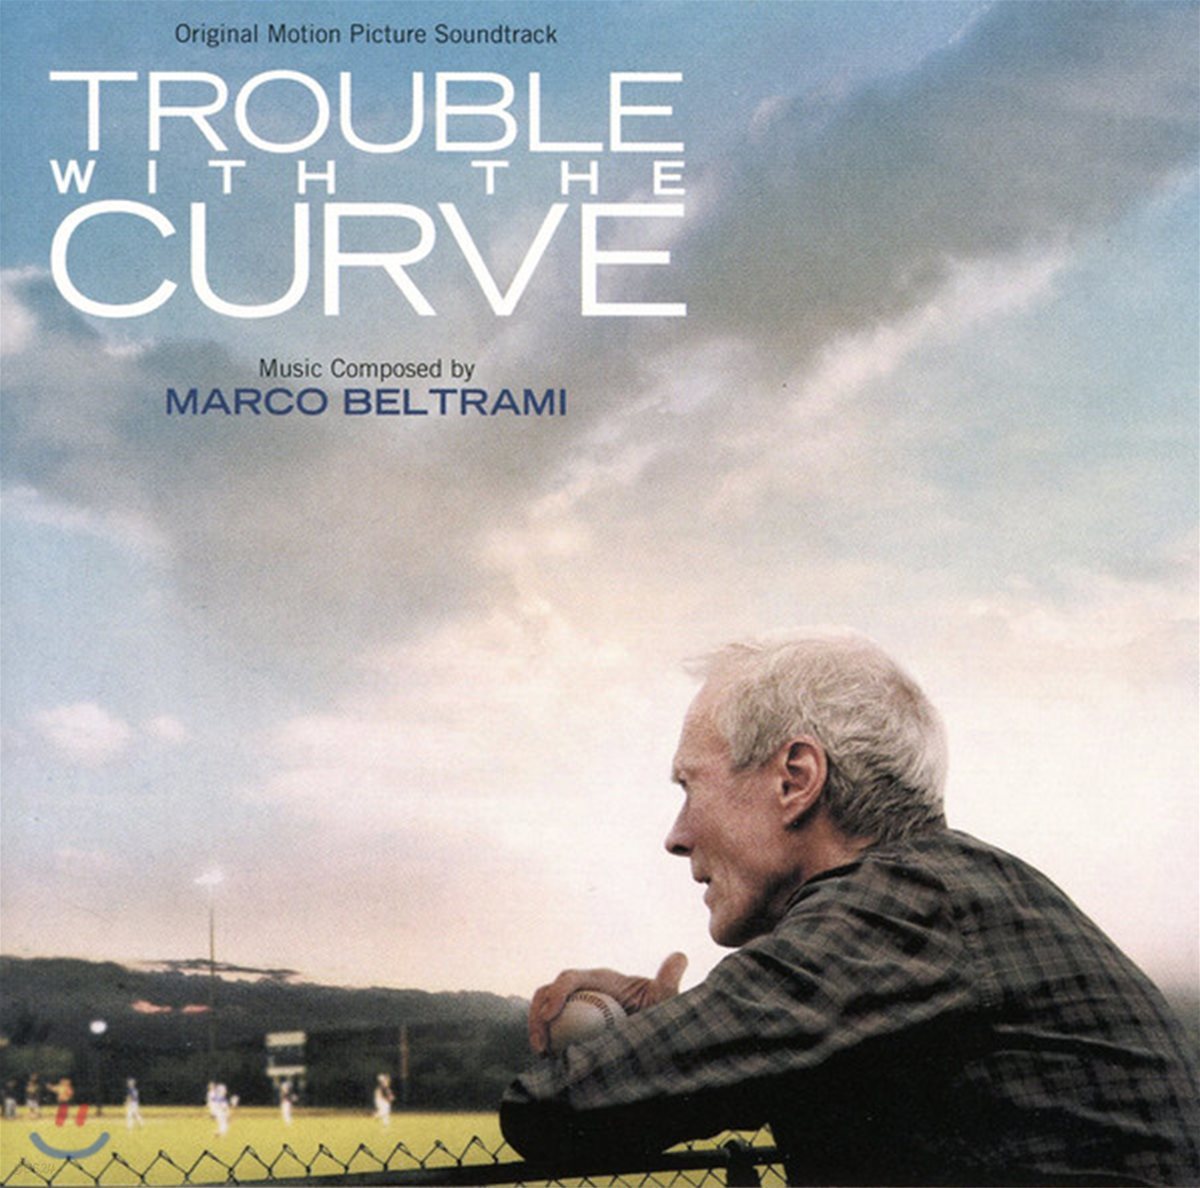 내 인생의 마지막 변화구 영화음악 (Trouble With The Curve OST by Marco Beltrami)